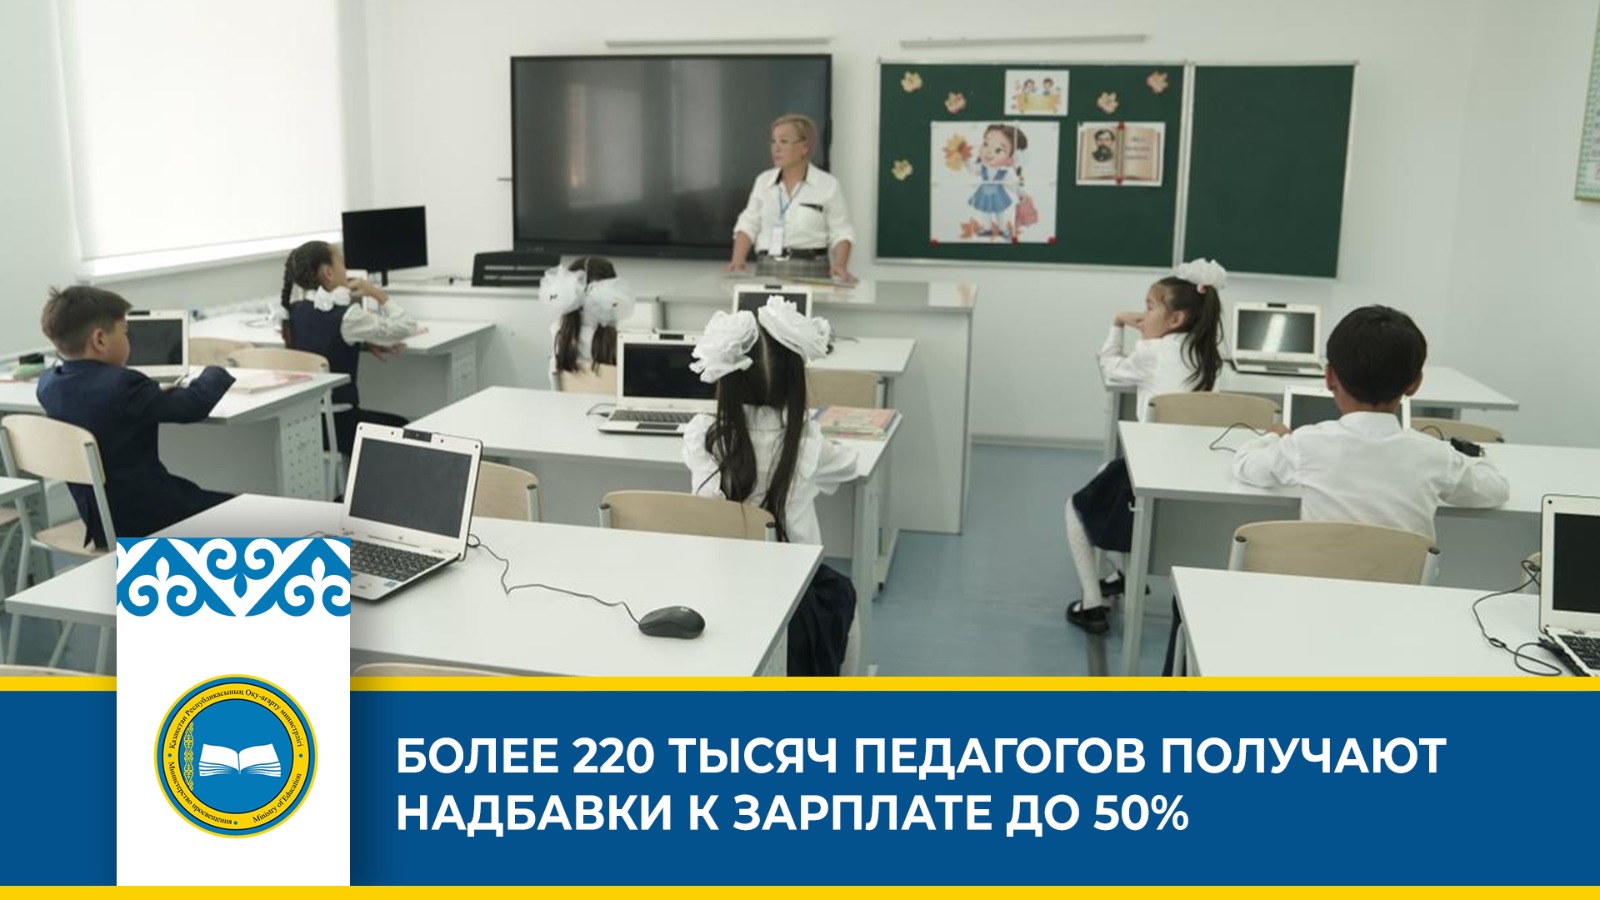 10 тысяч учителям. Достижение Казахстана в образовании.